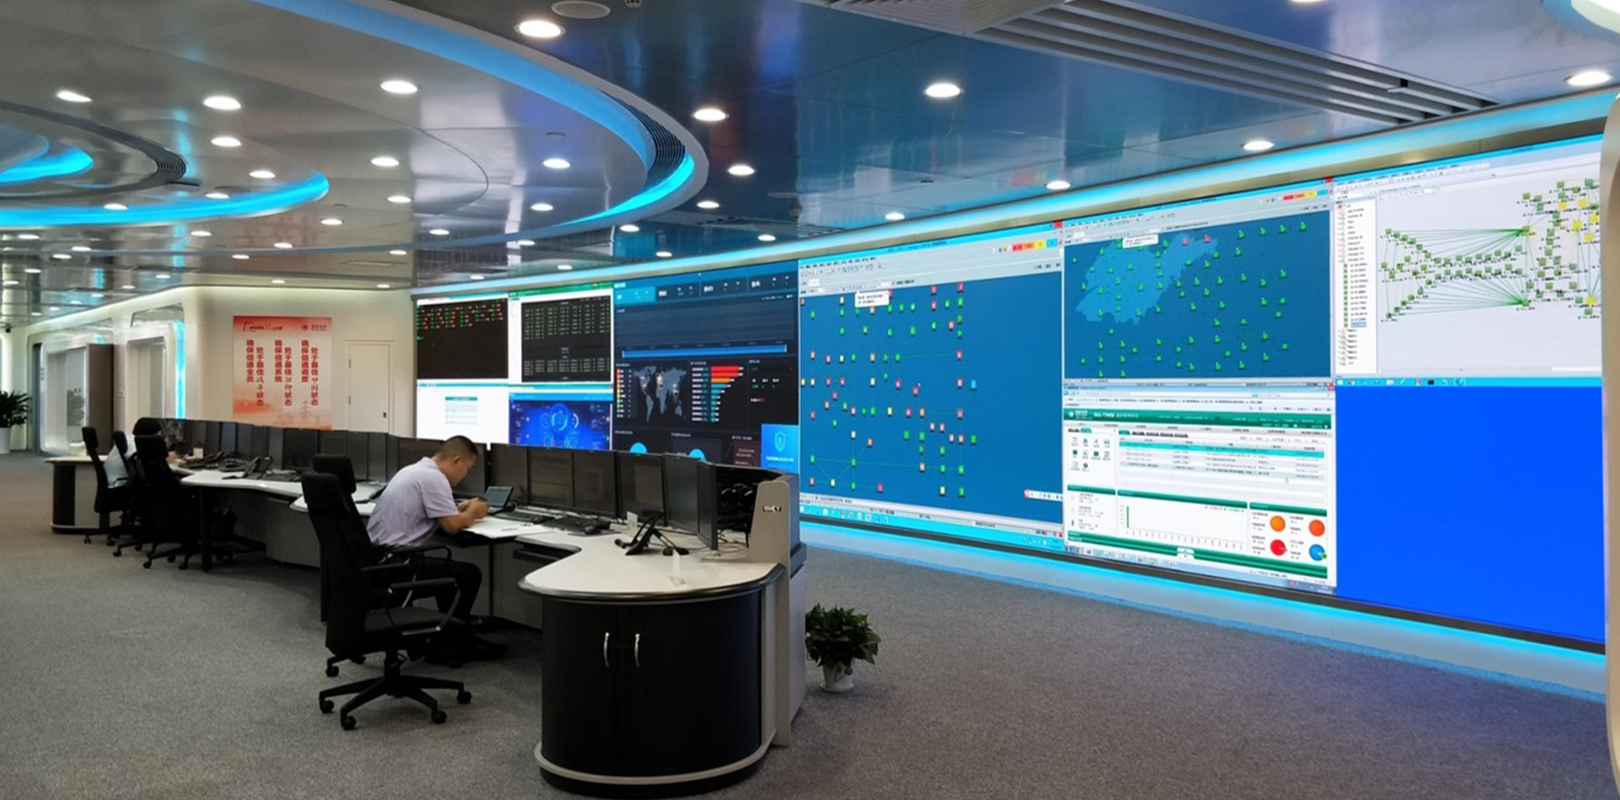 山東電力通信智能管控中心P1.2室內小間距led全彩屏案例